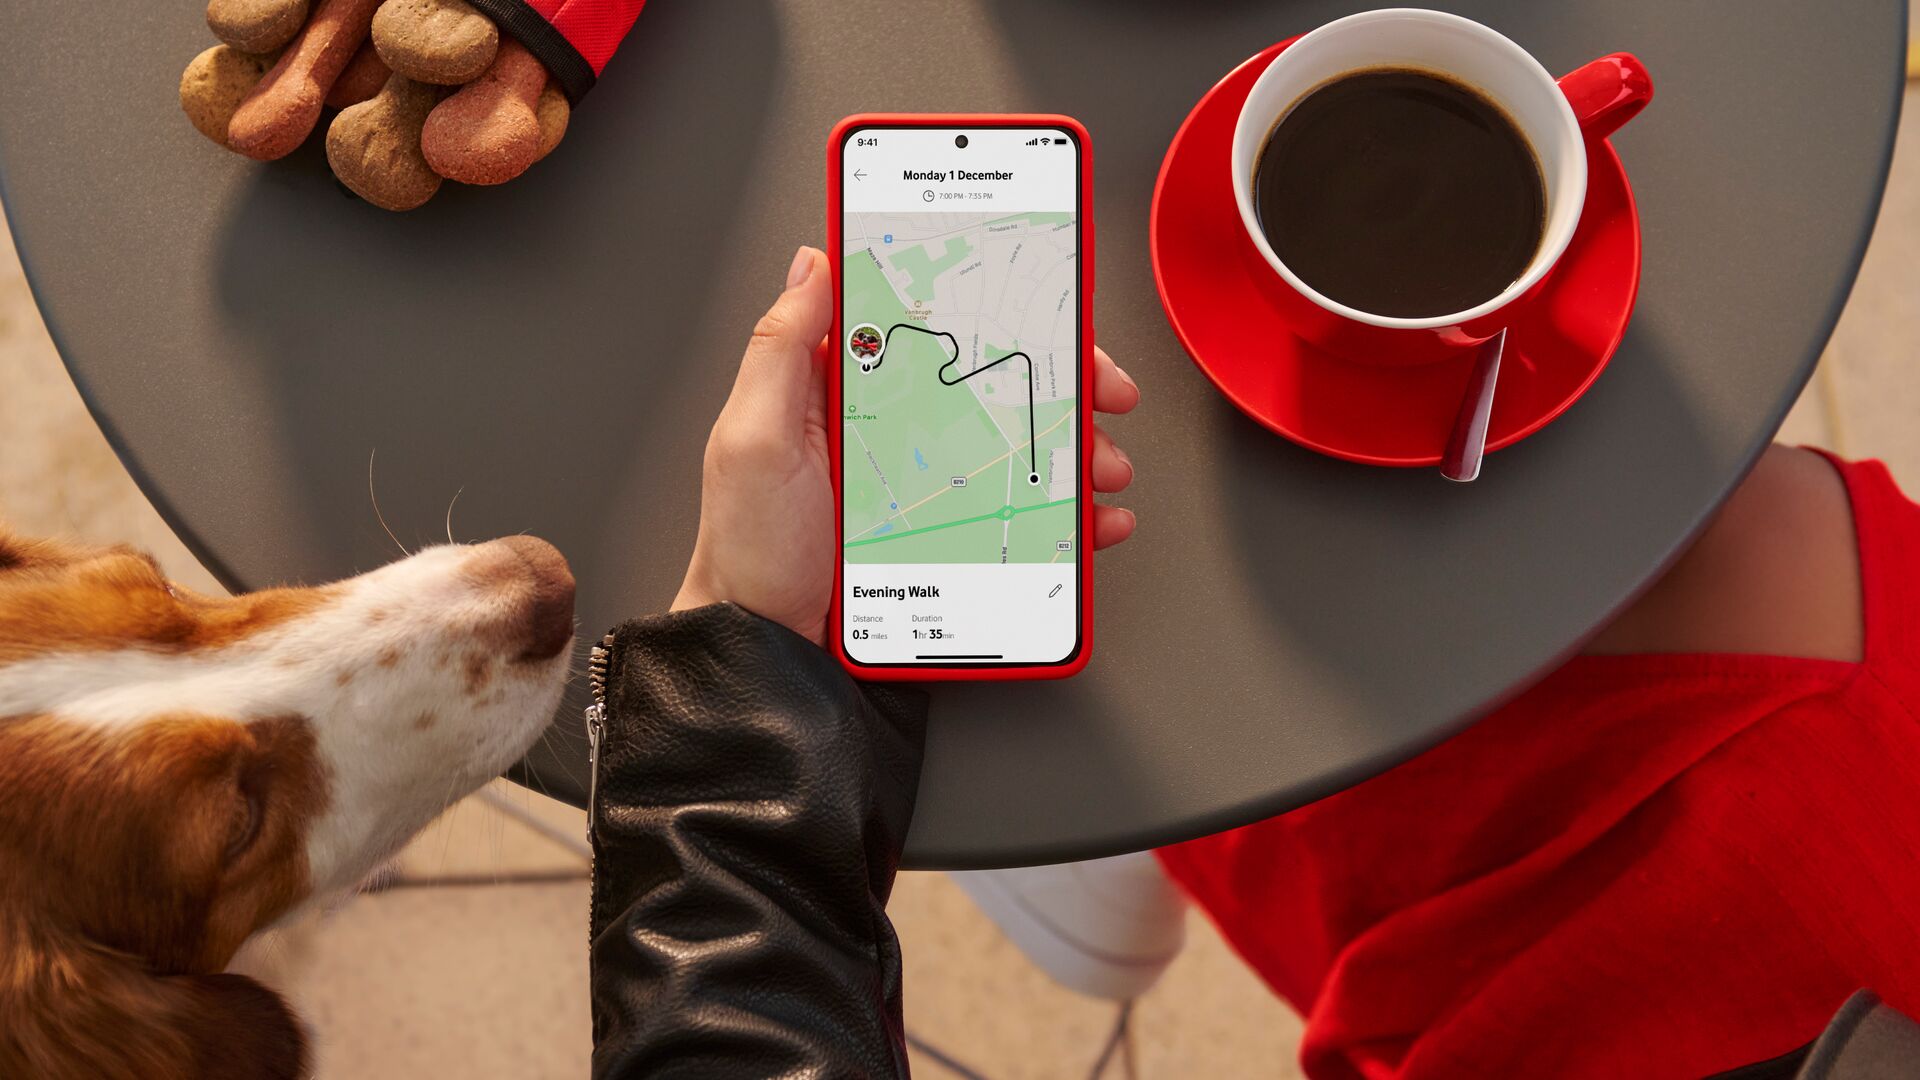 Curve Pet Tracker Clip, el nuevo GPS inteligente para mascotas de Vodafone